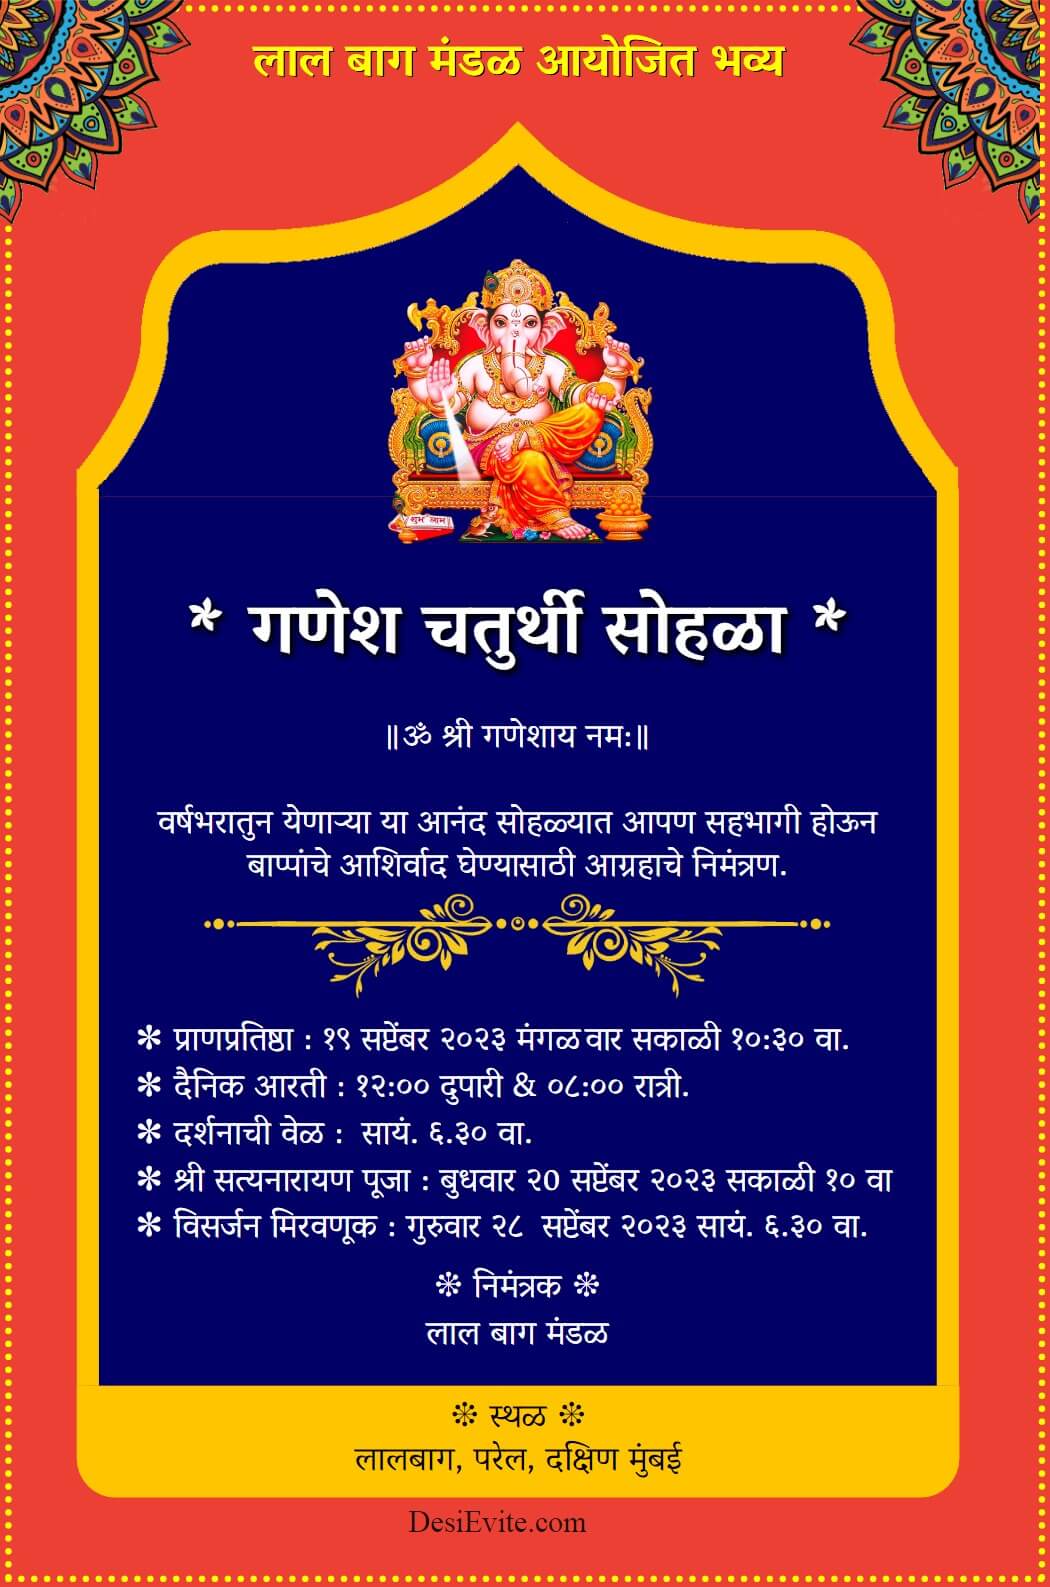 Ganesh mandal invitation card marathi